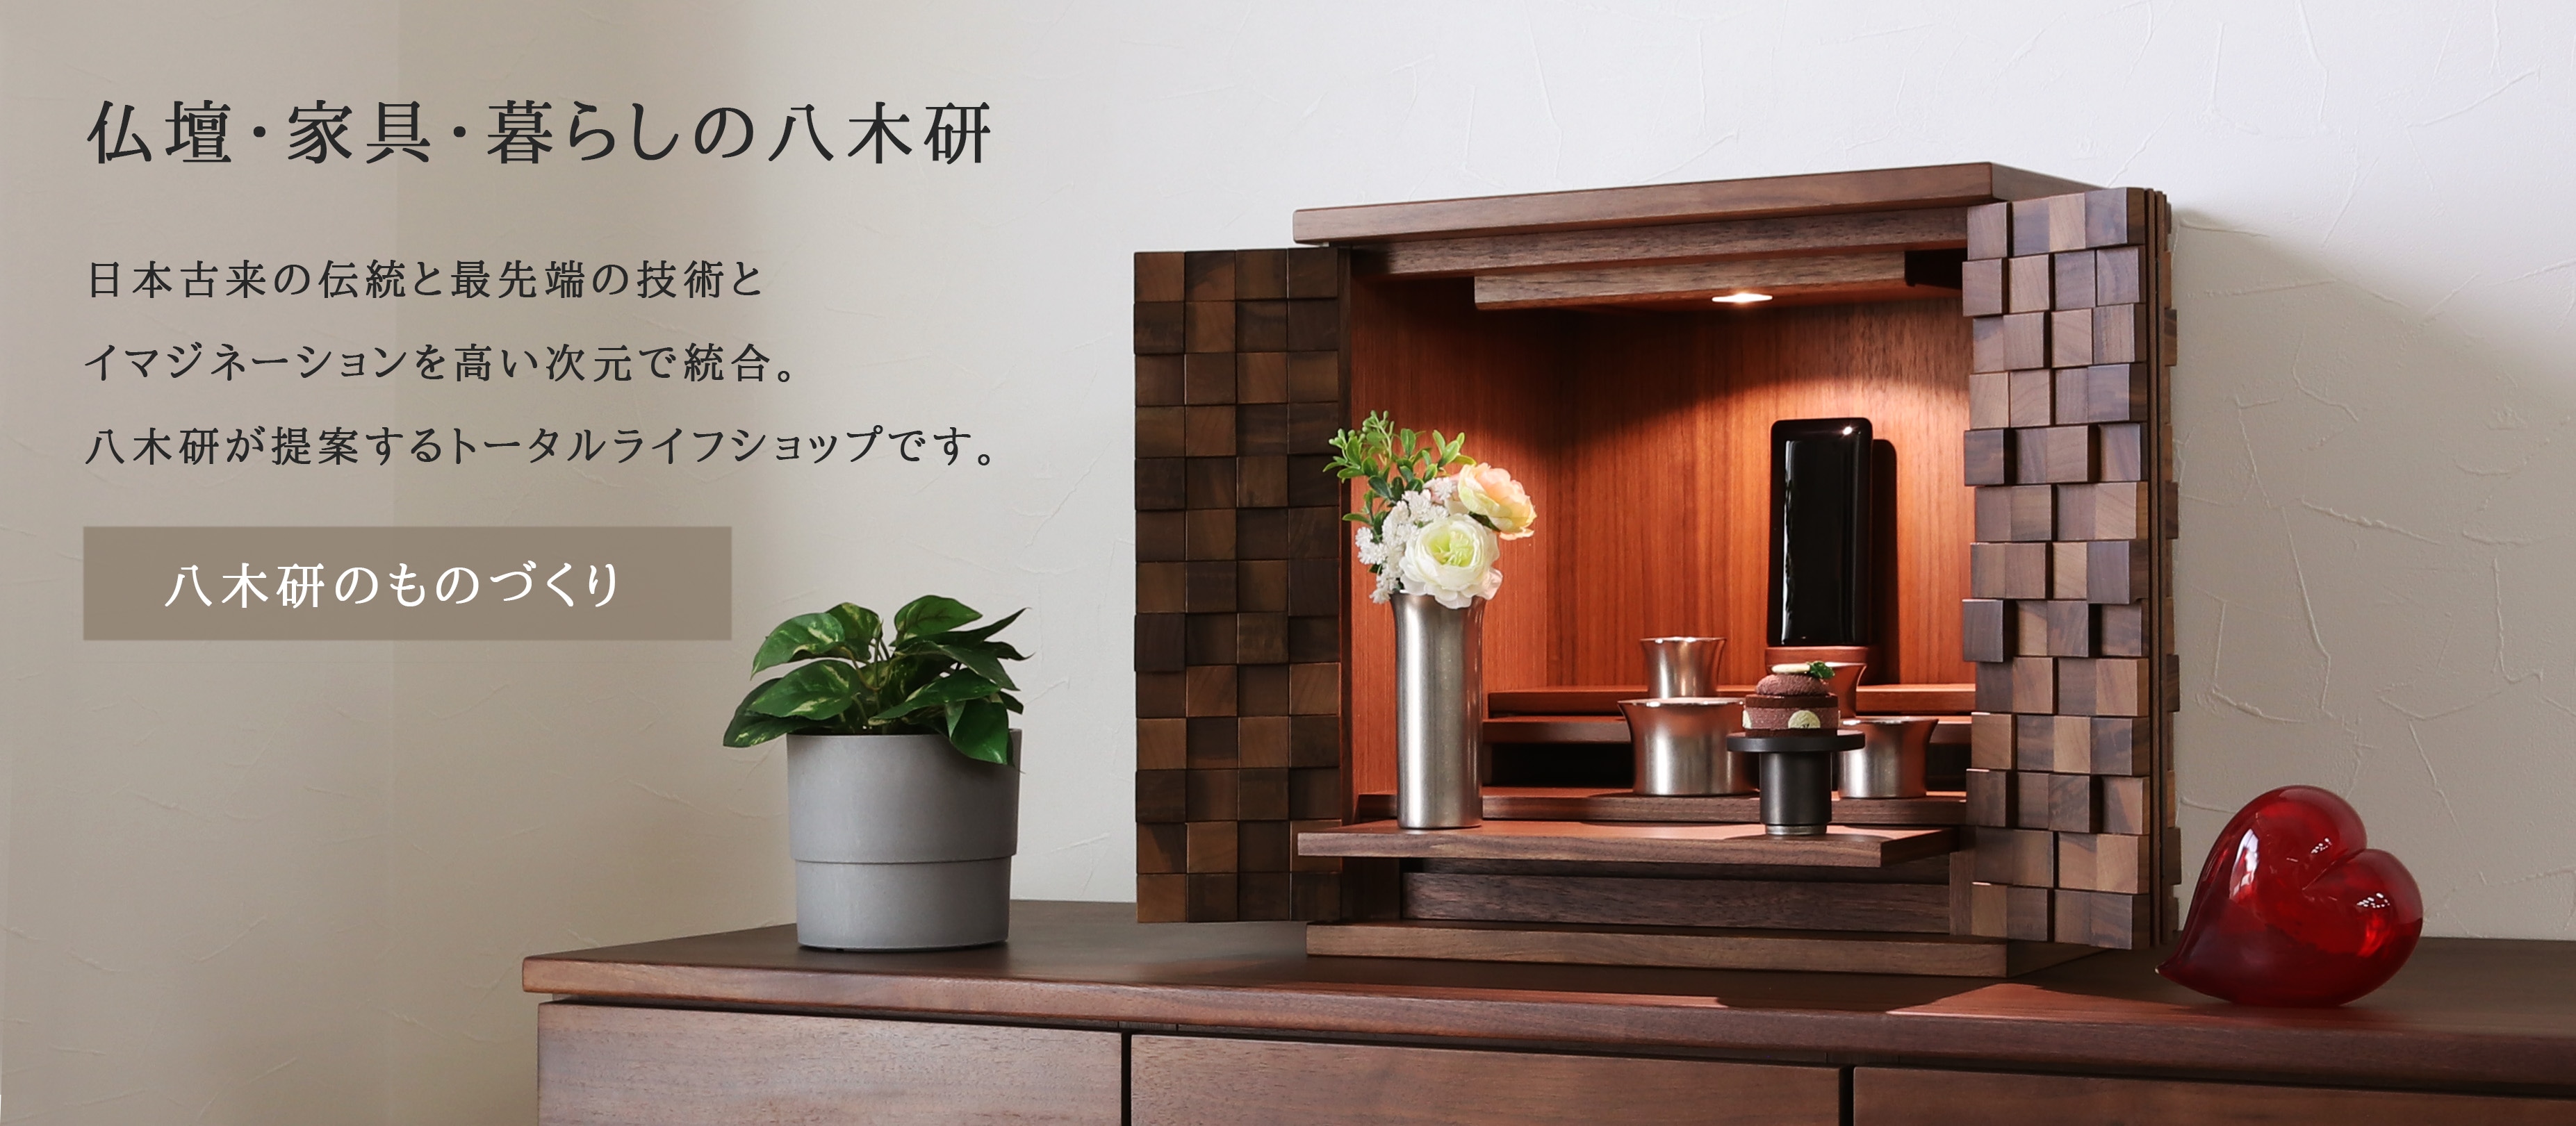 木製ラック・ウッドラック【現代仏壇】Yagiken美しい化粧板とMDFで作った高級コンパクト仏壇新未使用